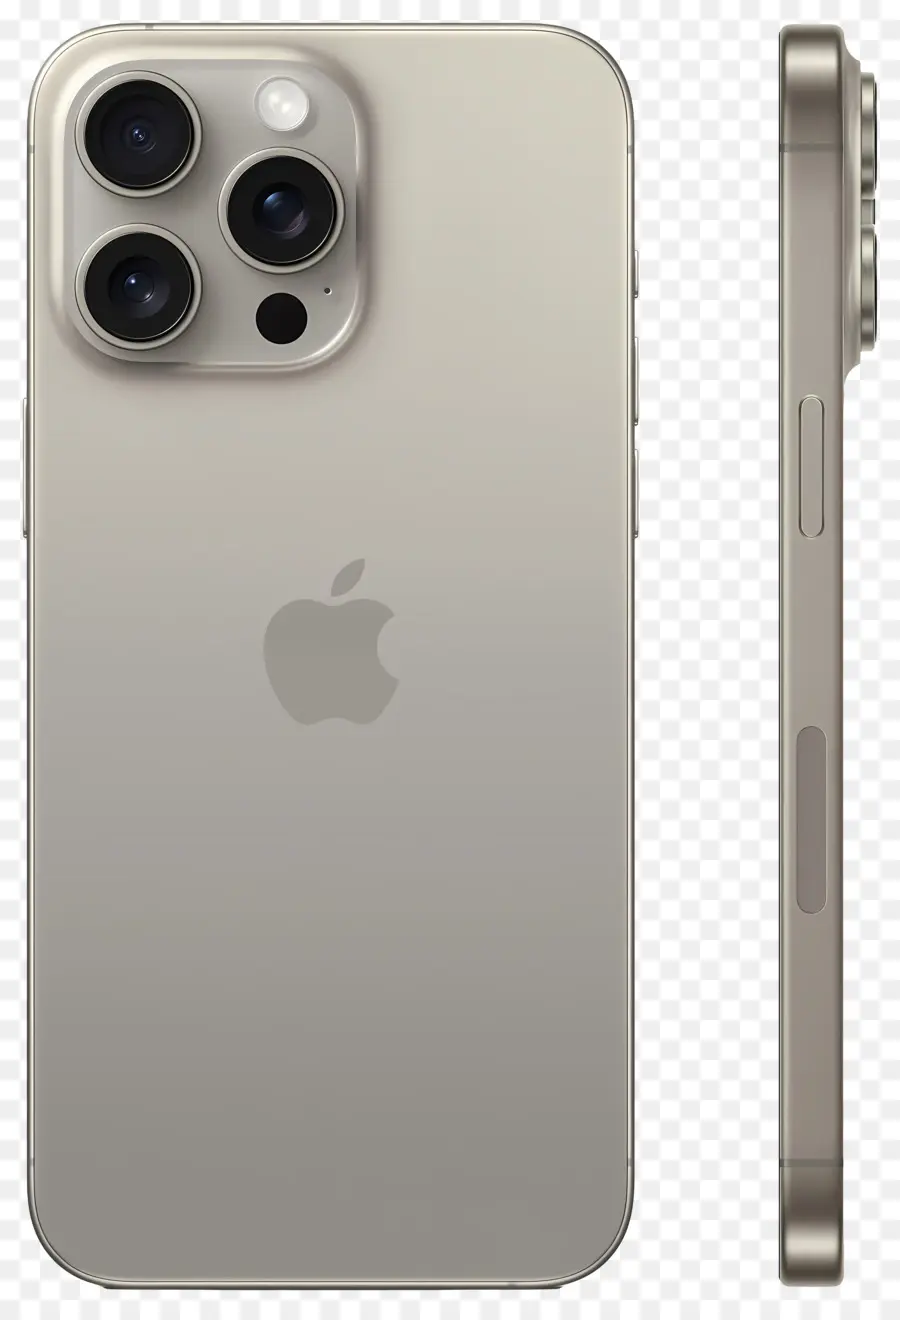 camera ống kính - iPhone 11 pro max với ống kính camera lớn